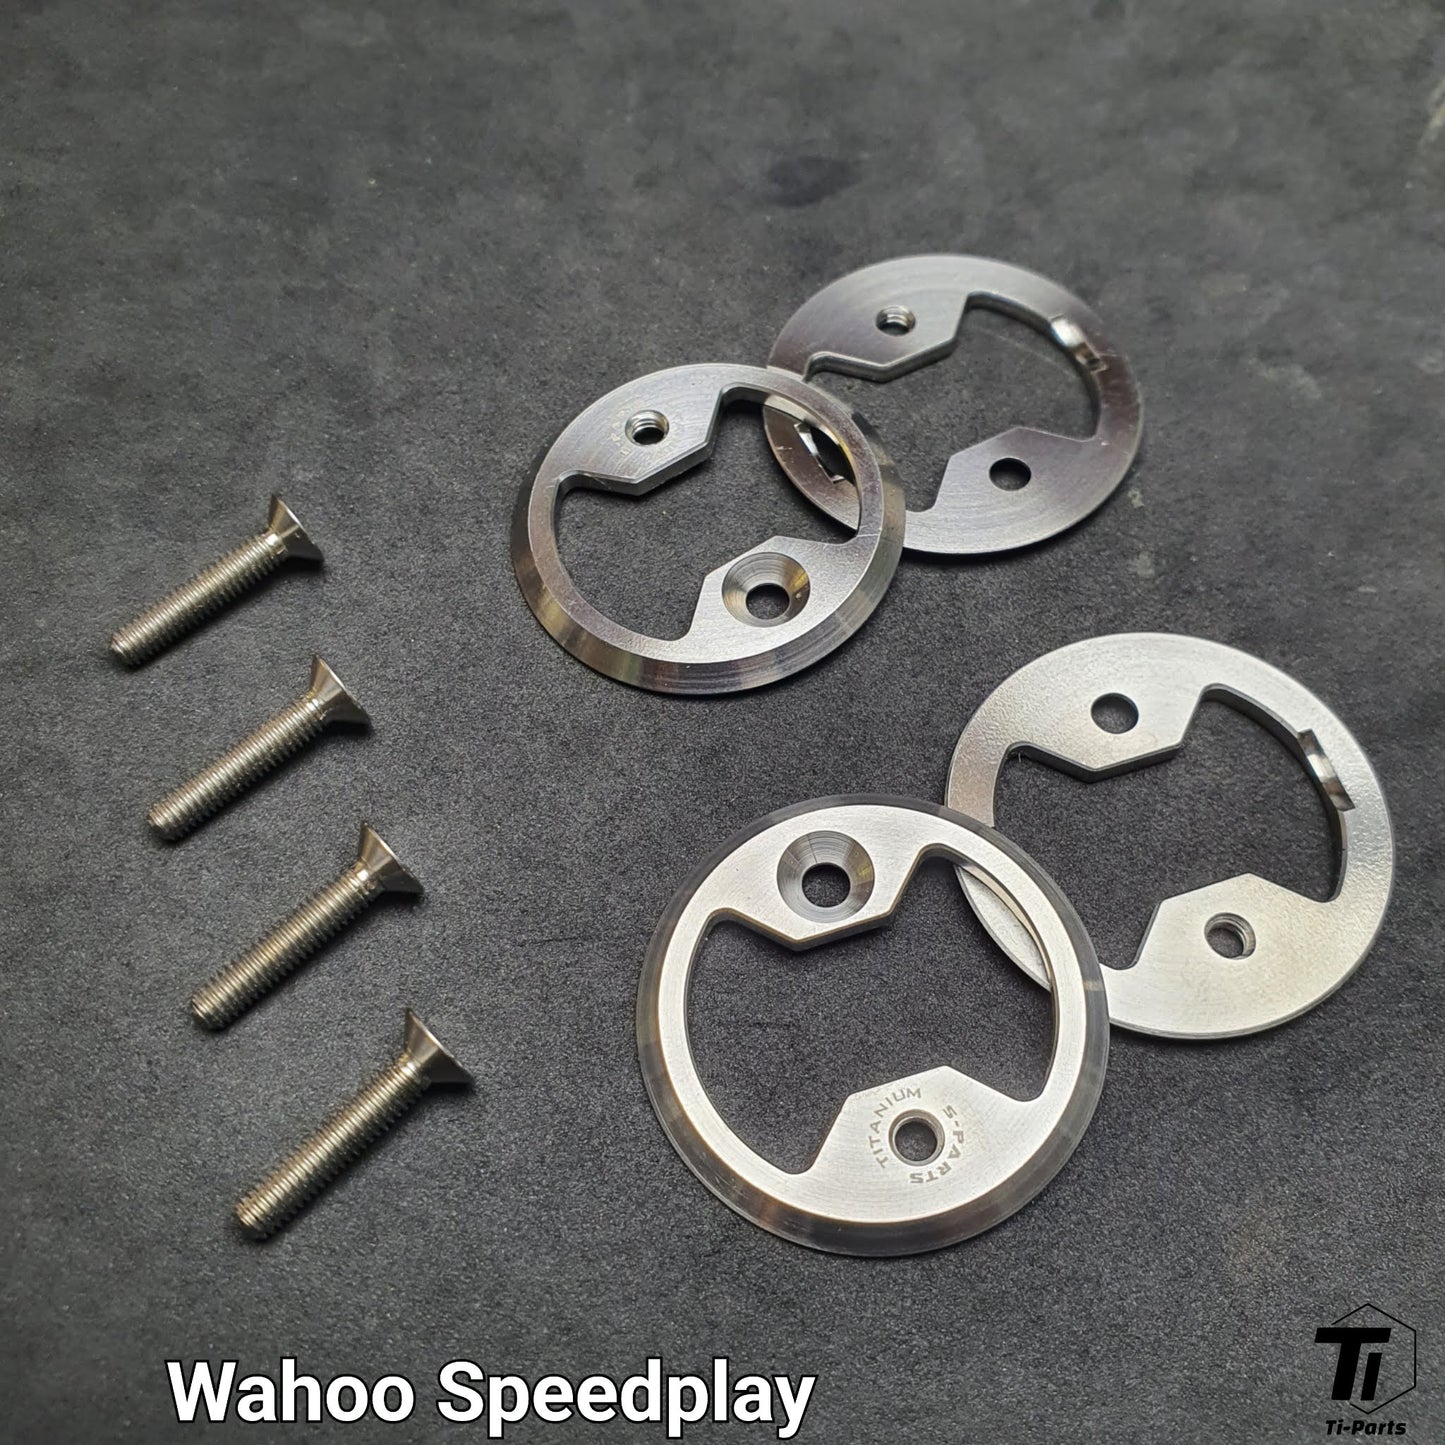 Zestaw aktualizacyjny Titanium Wahoo SpeedPlay | Prwlink Pedał miernika mocy zerowej | Tytan klasy 5 w Singapurze